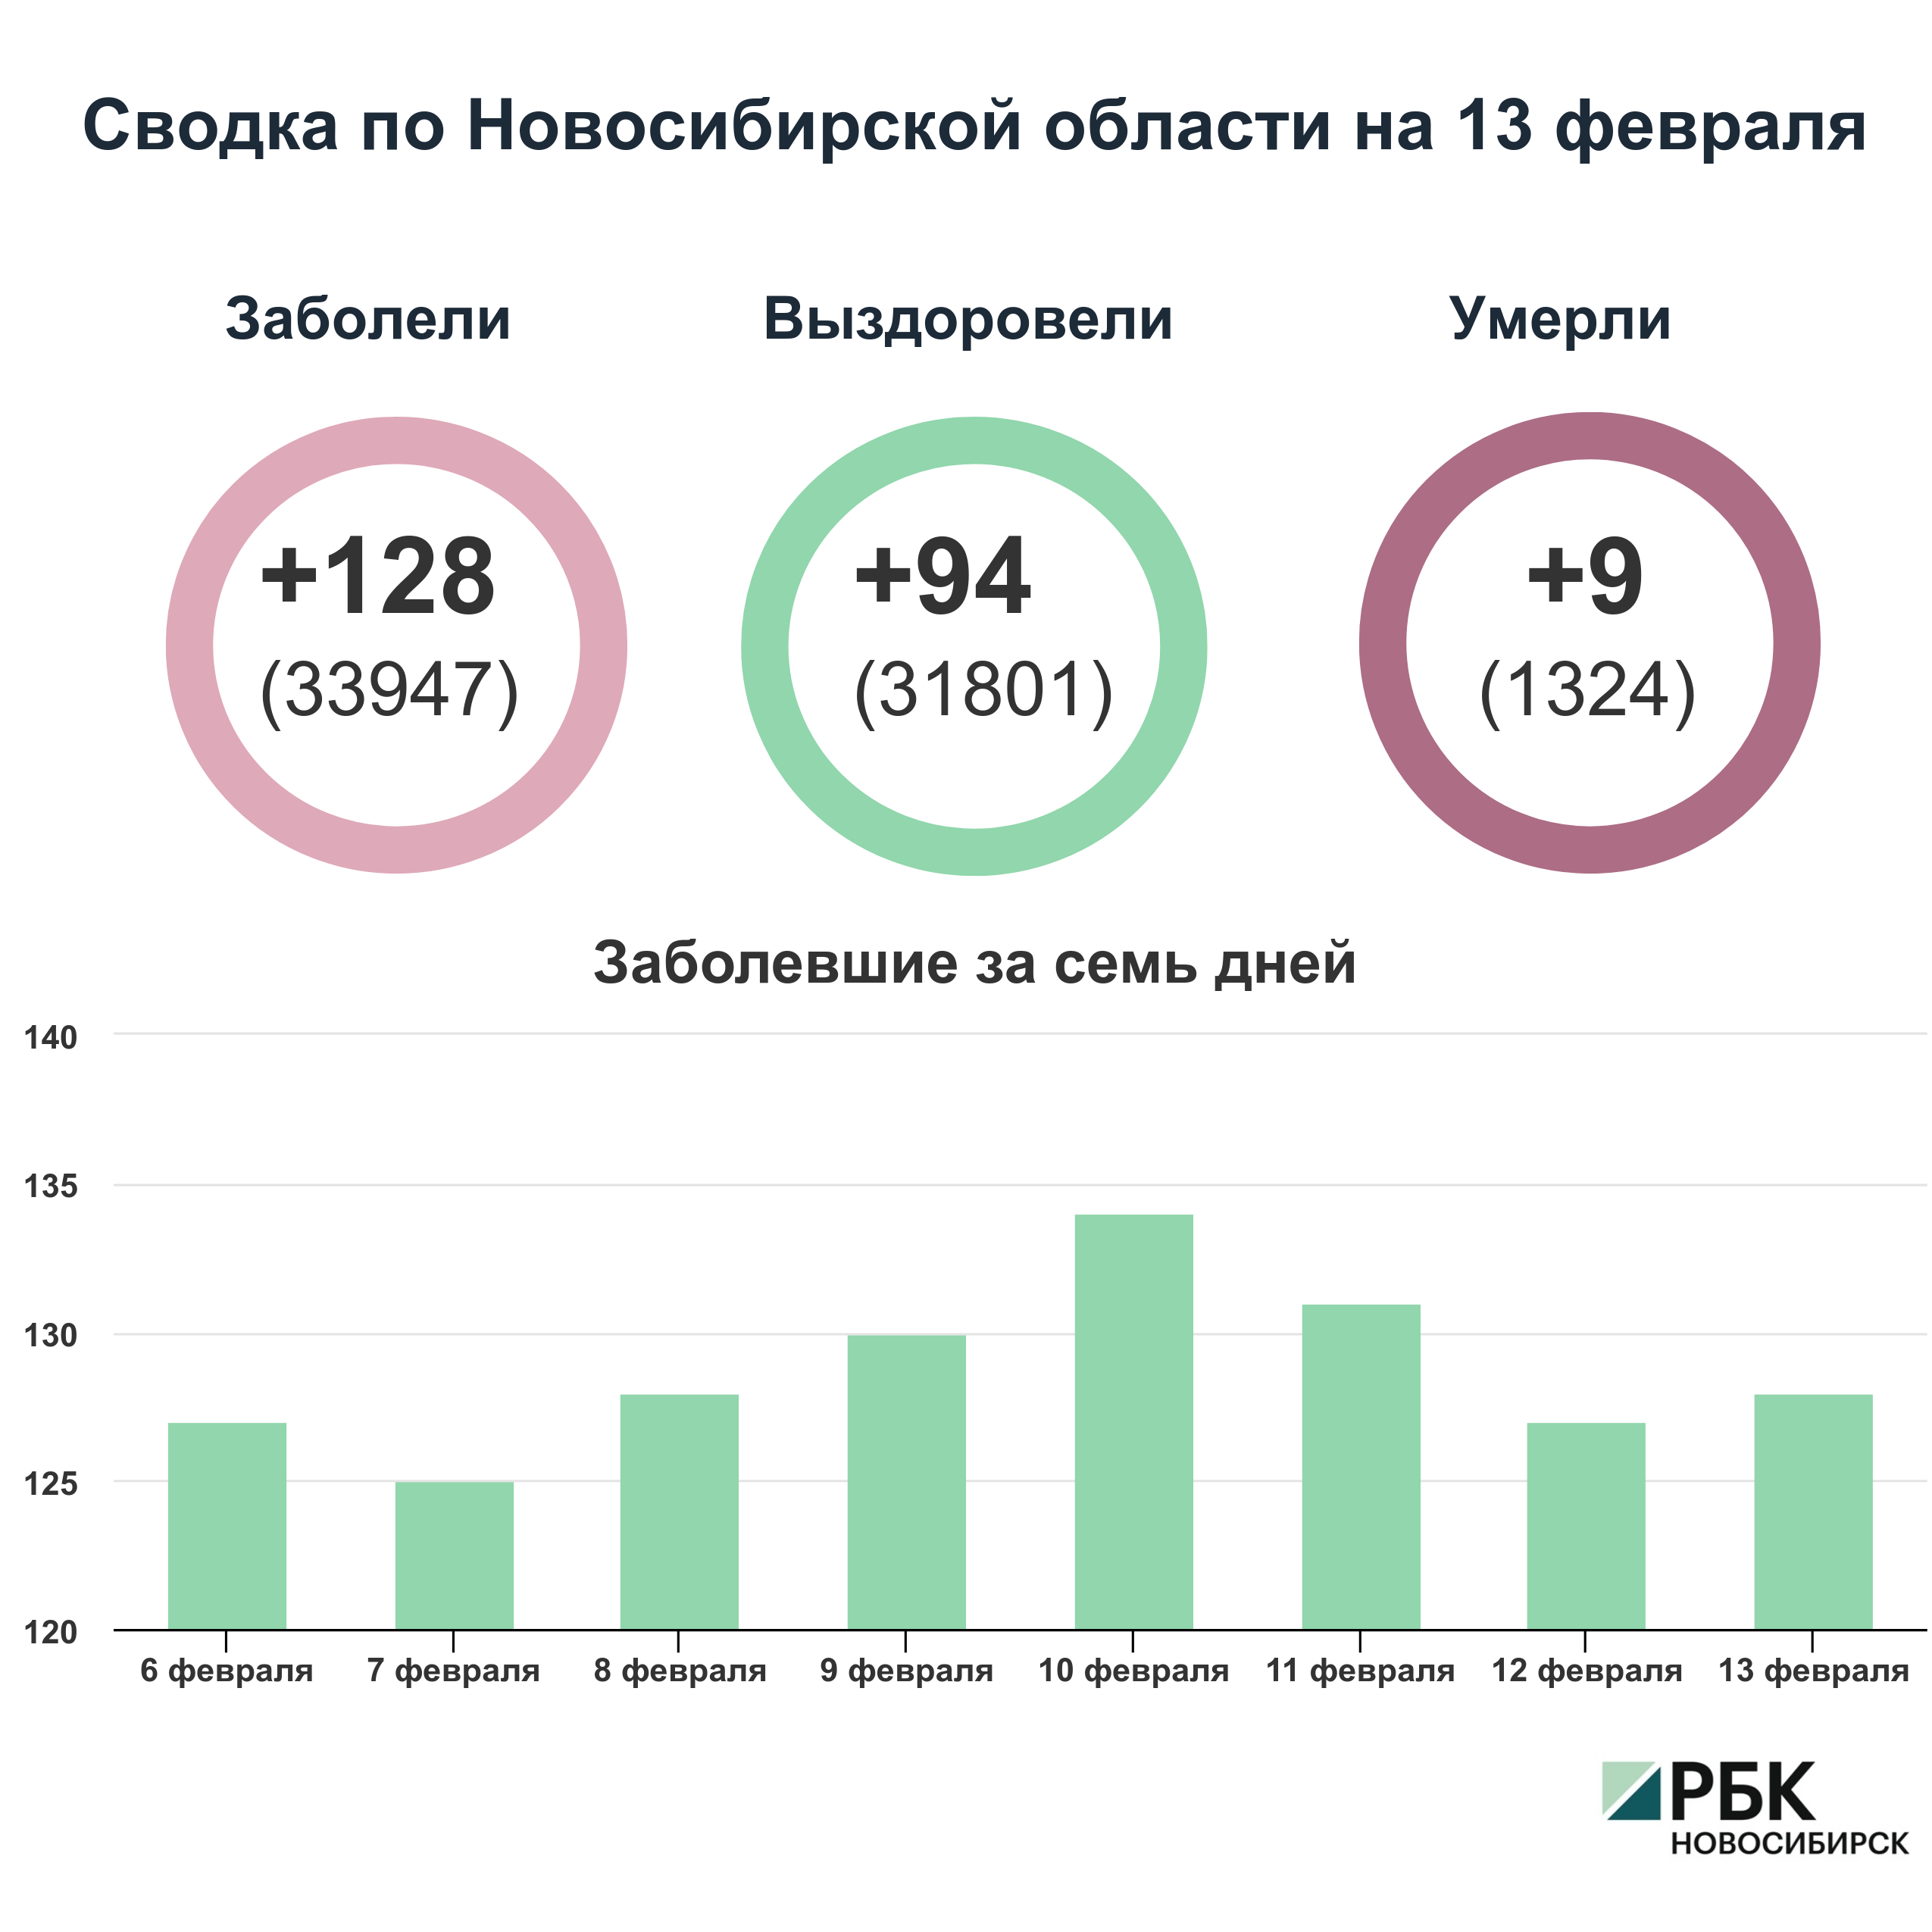 Коронавирус в Новосибирске: сводка на 13 февраля